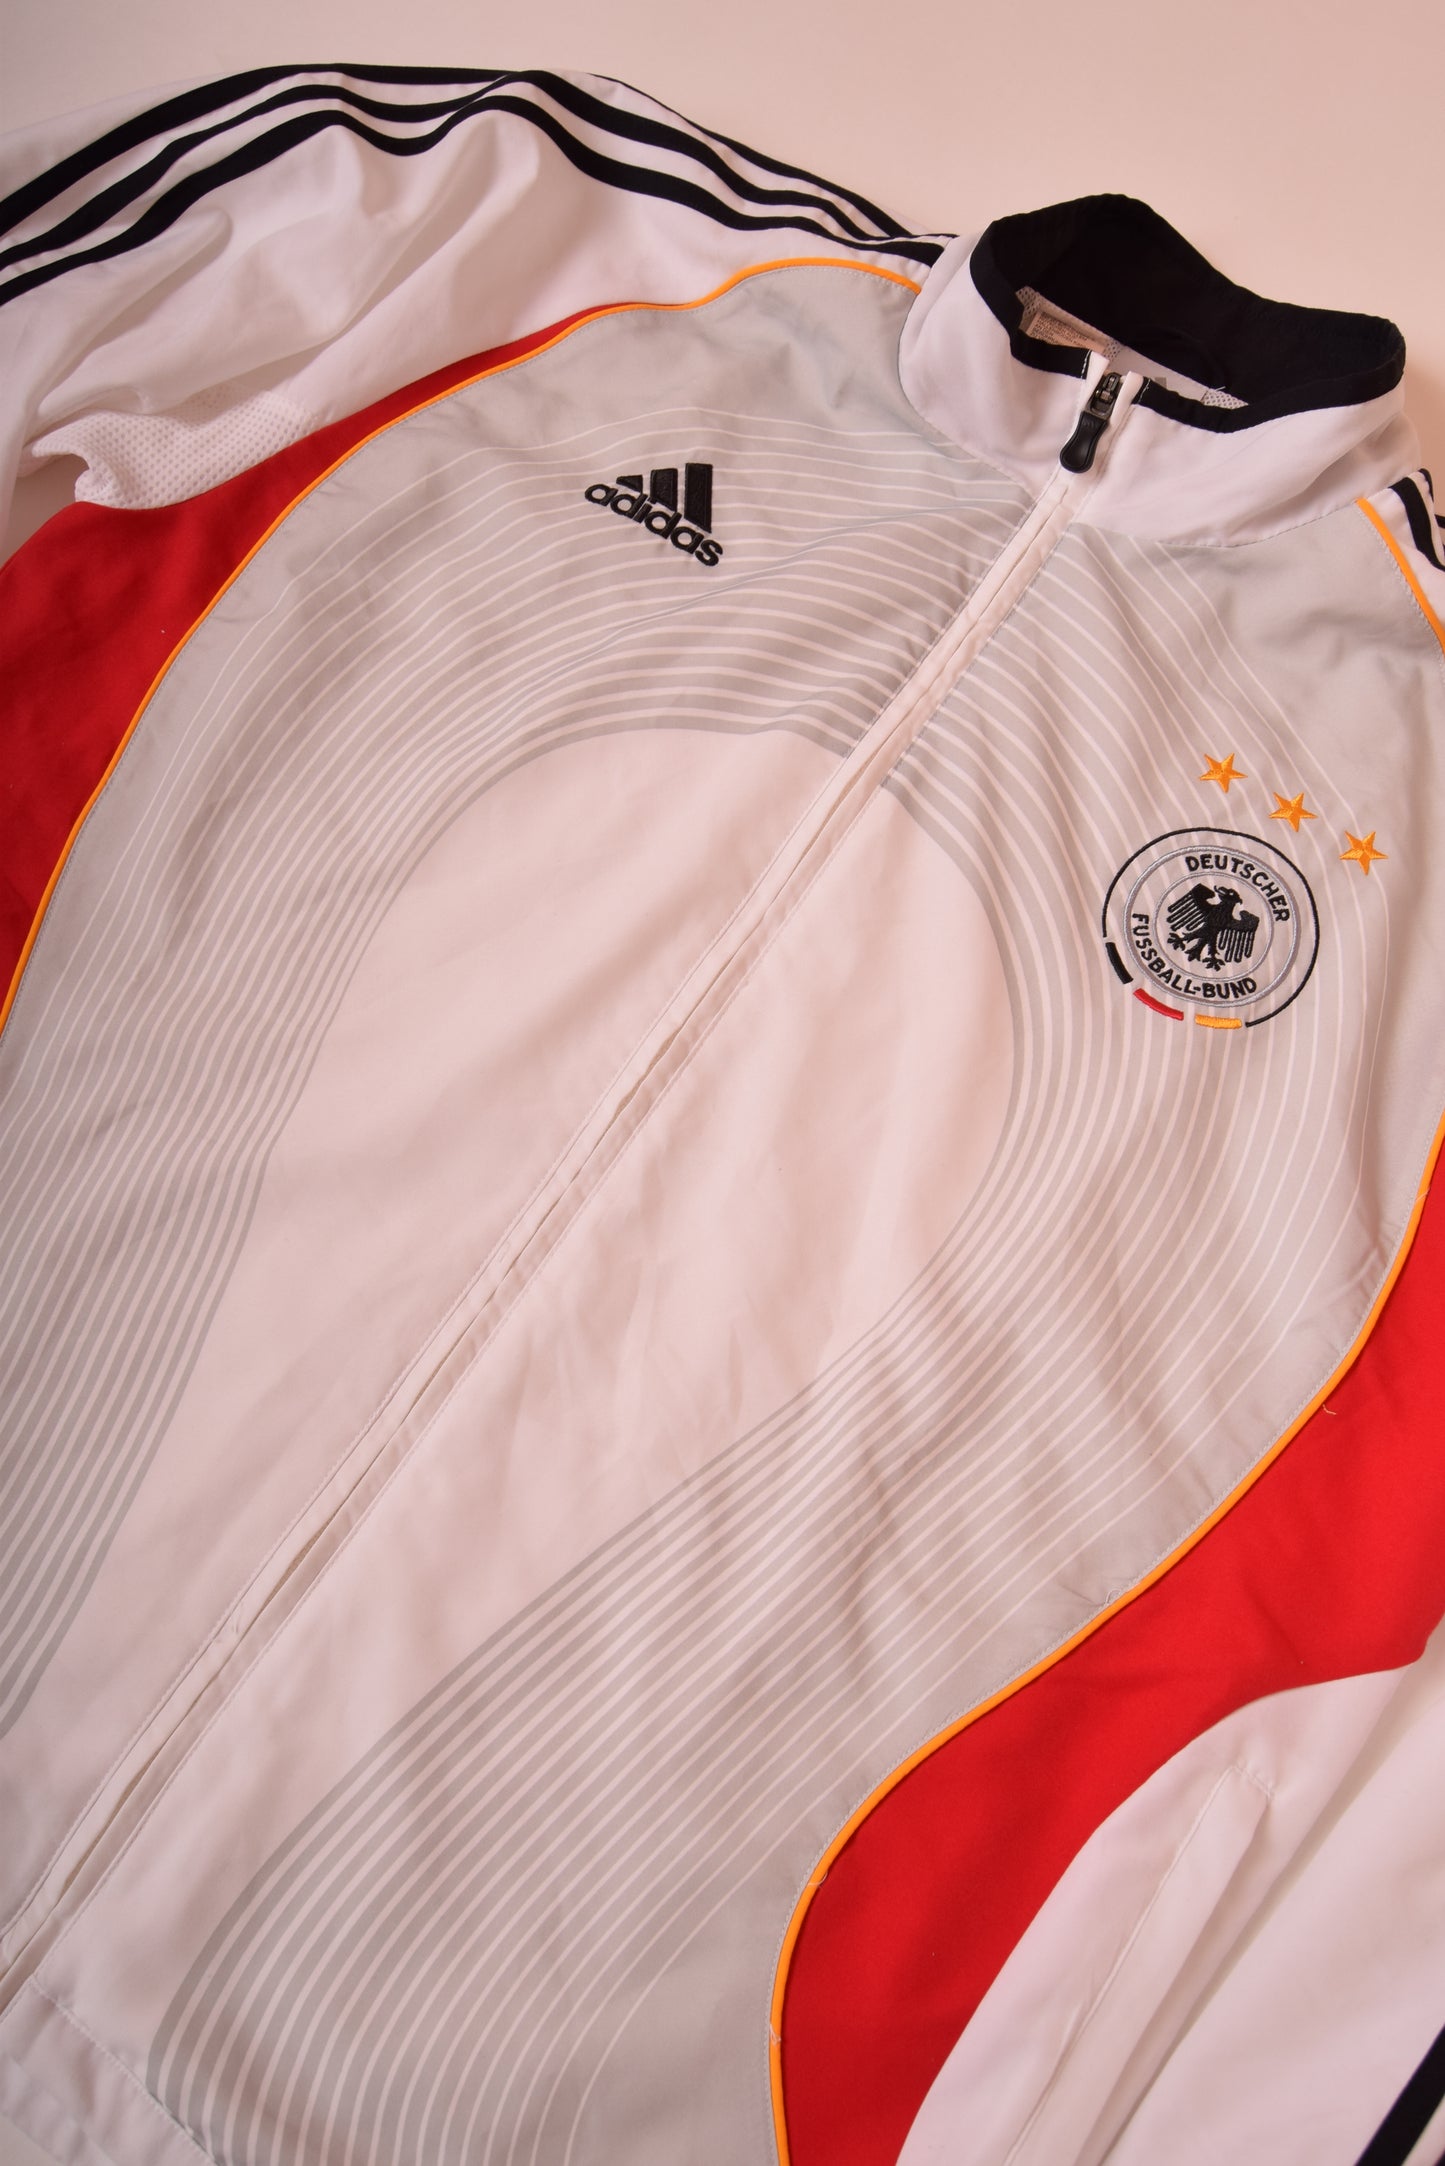 Germany Adidas Jacket 2006-2007 Football Team